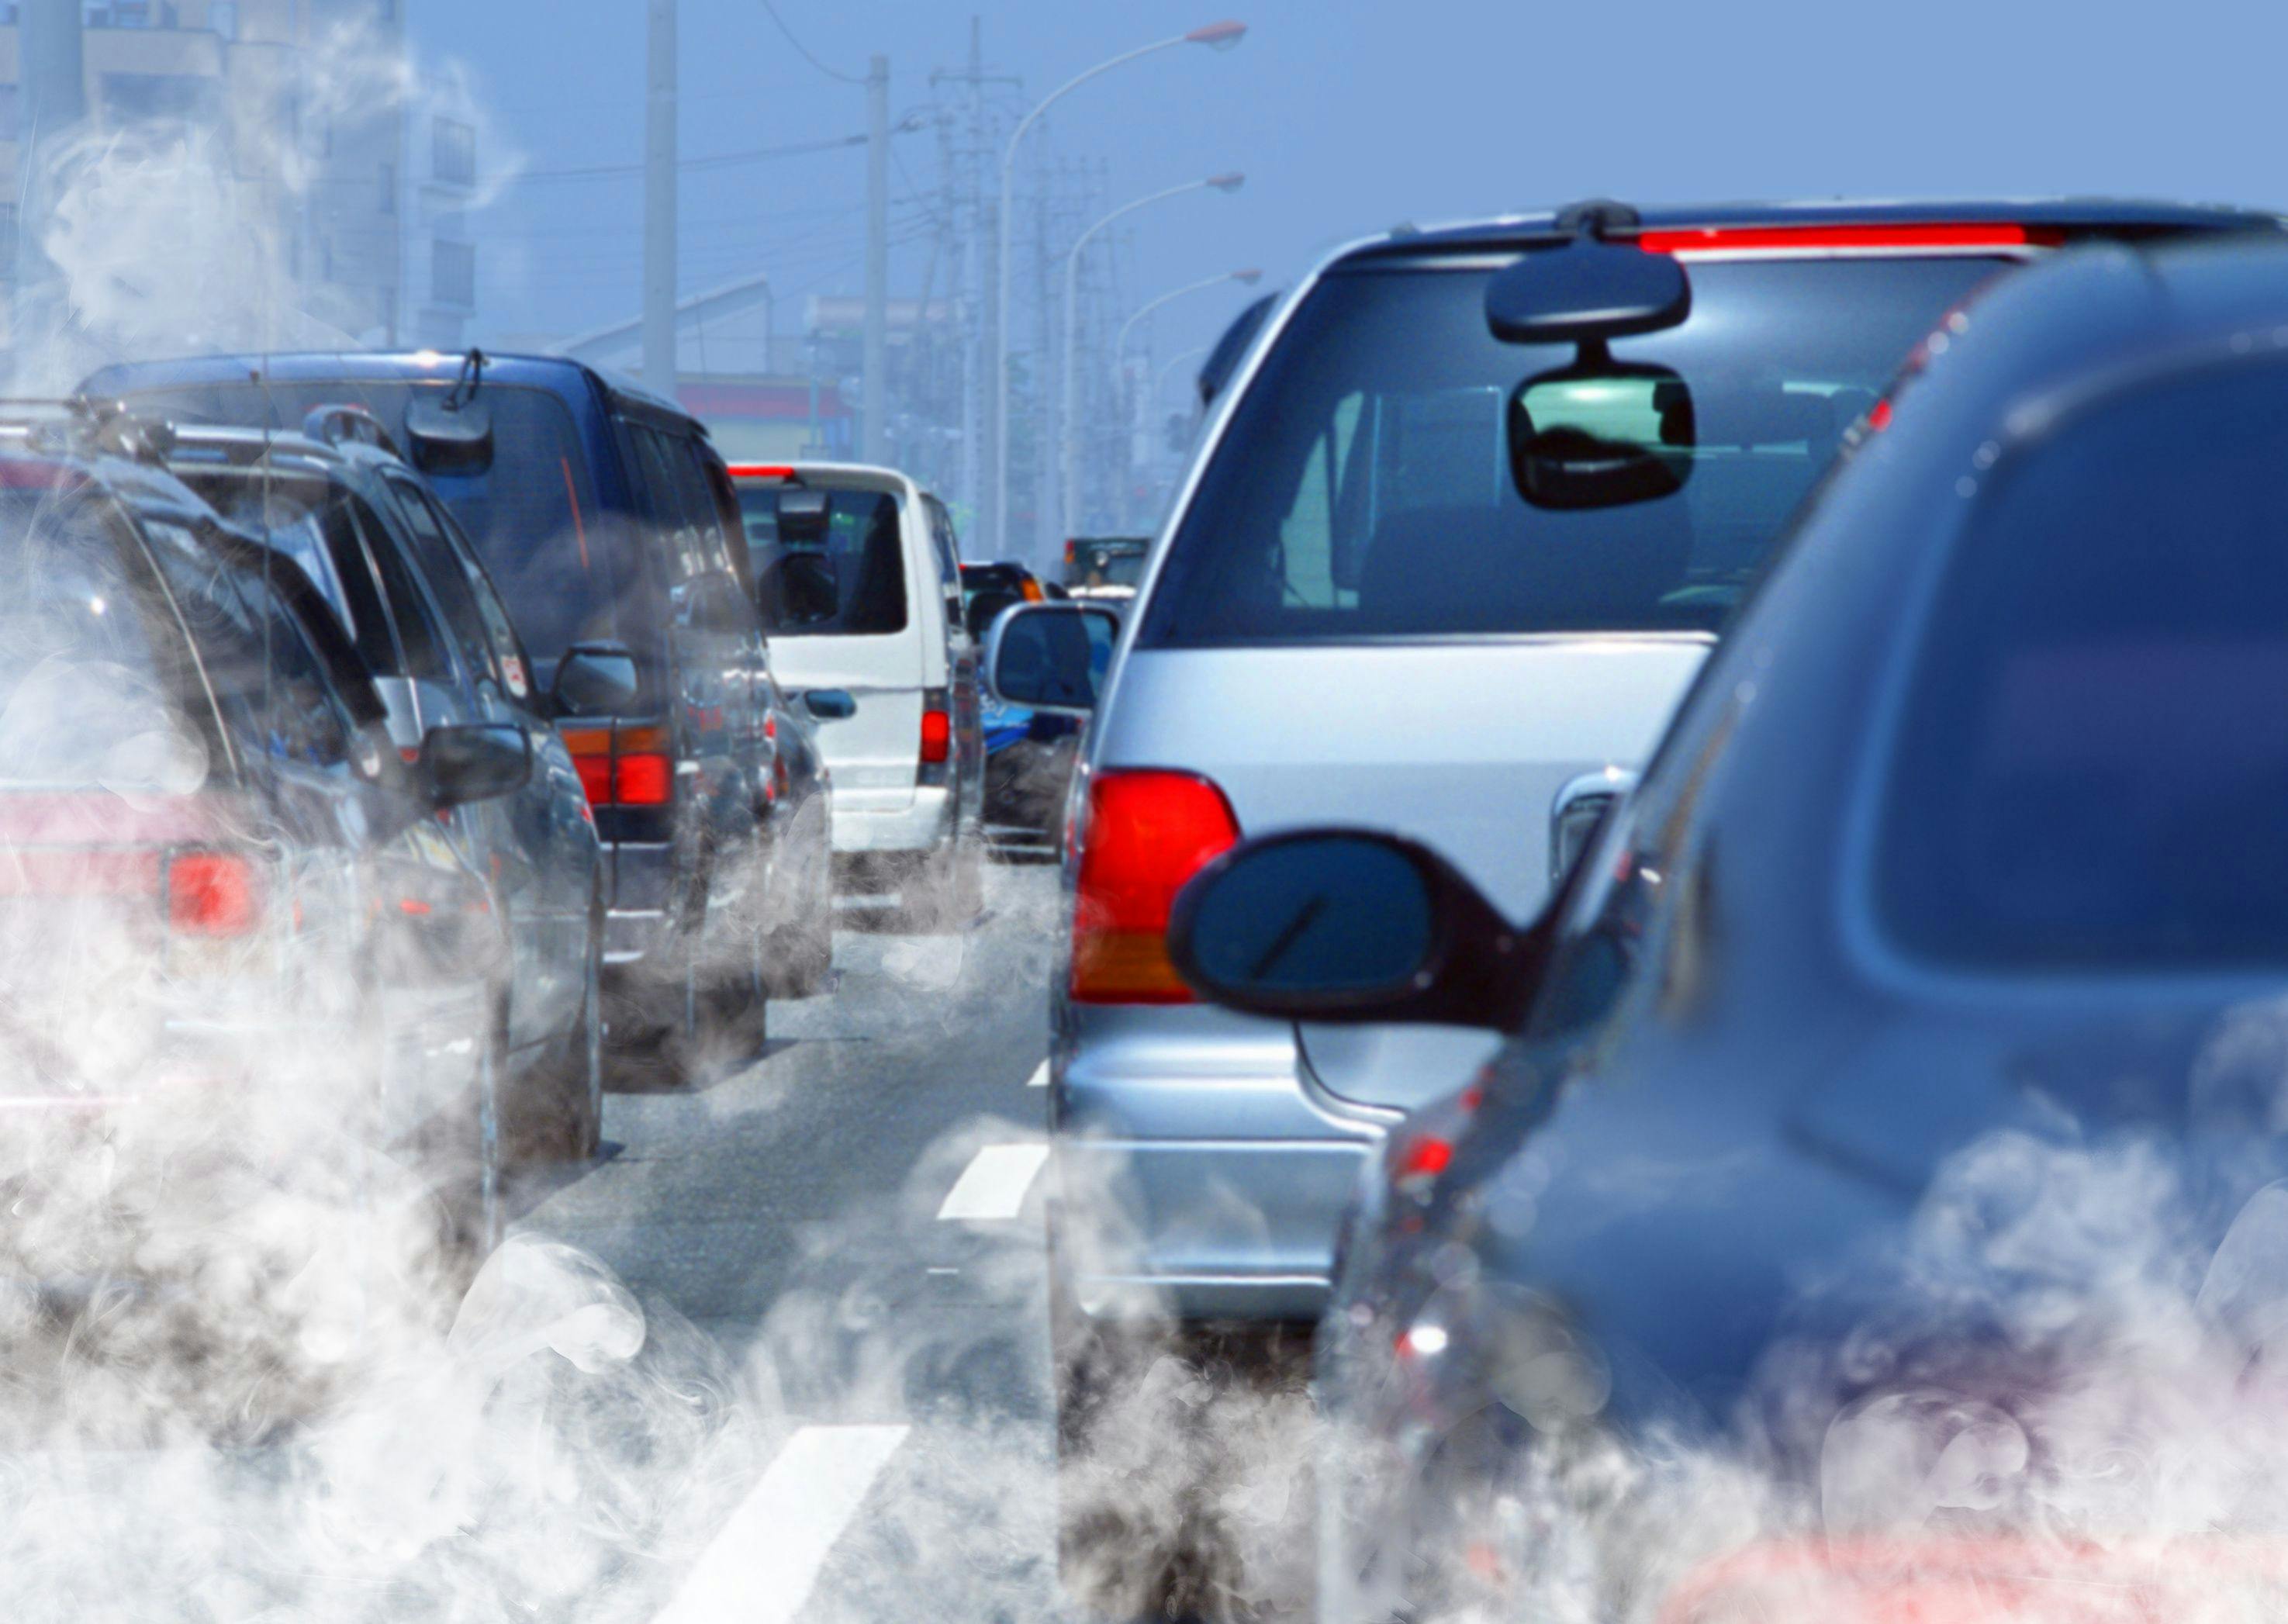 Traffic-related air pollution | Sergiy Serdyuk - stock.adobe.com